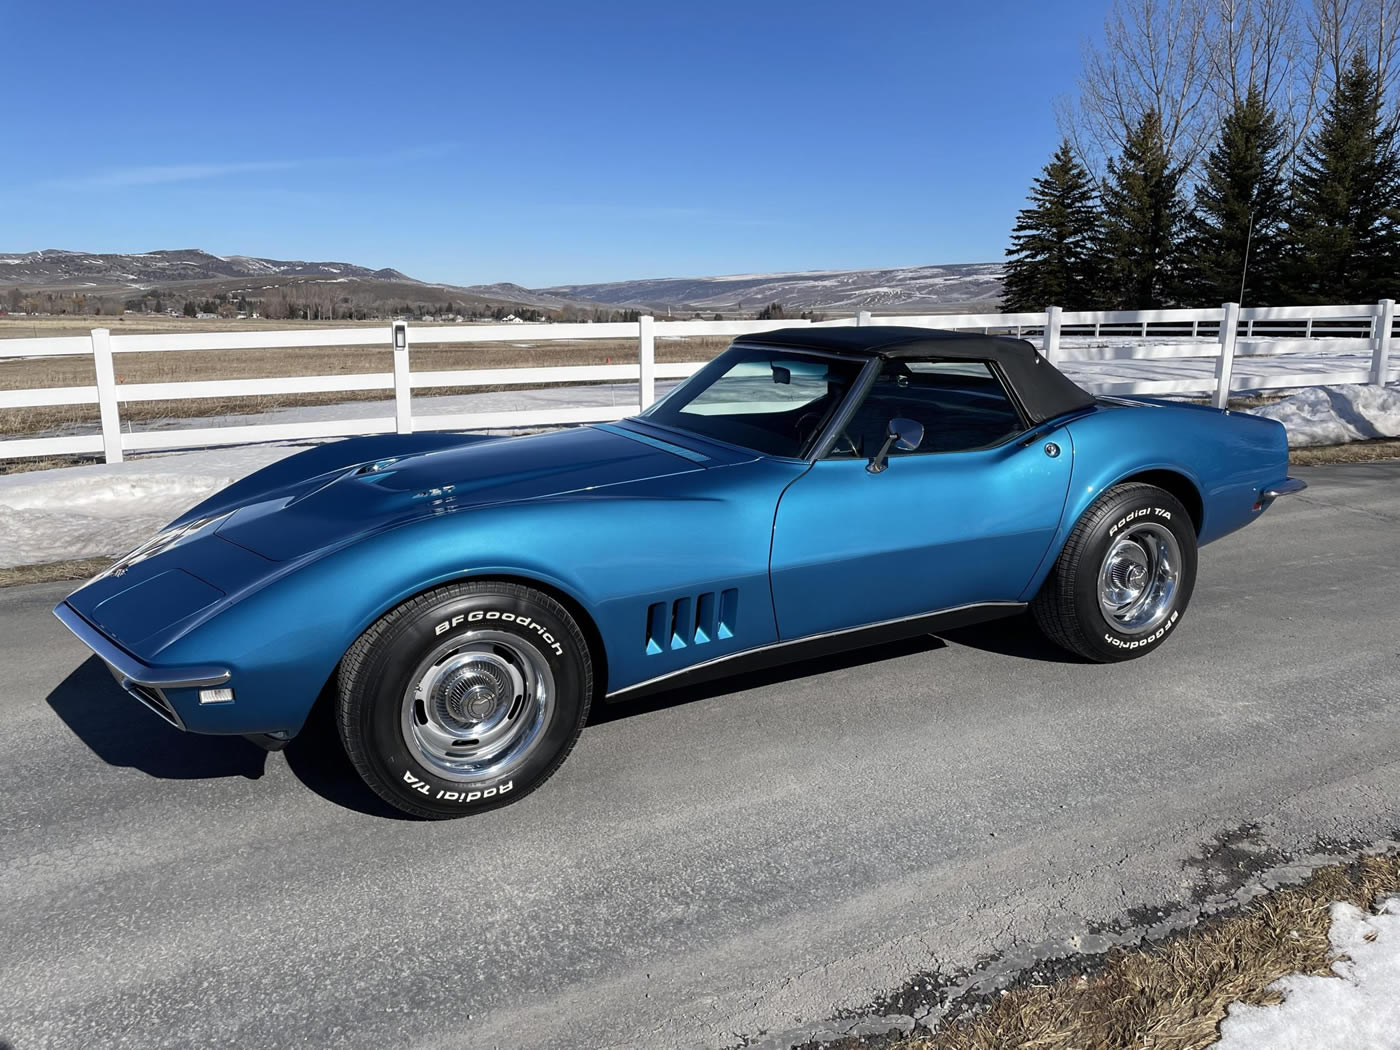 1968 Corvette Convertible L71 427/435 4-Speed in Le Mans Blue